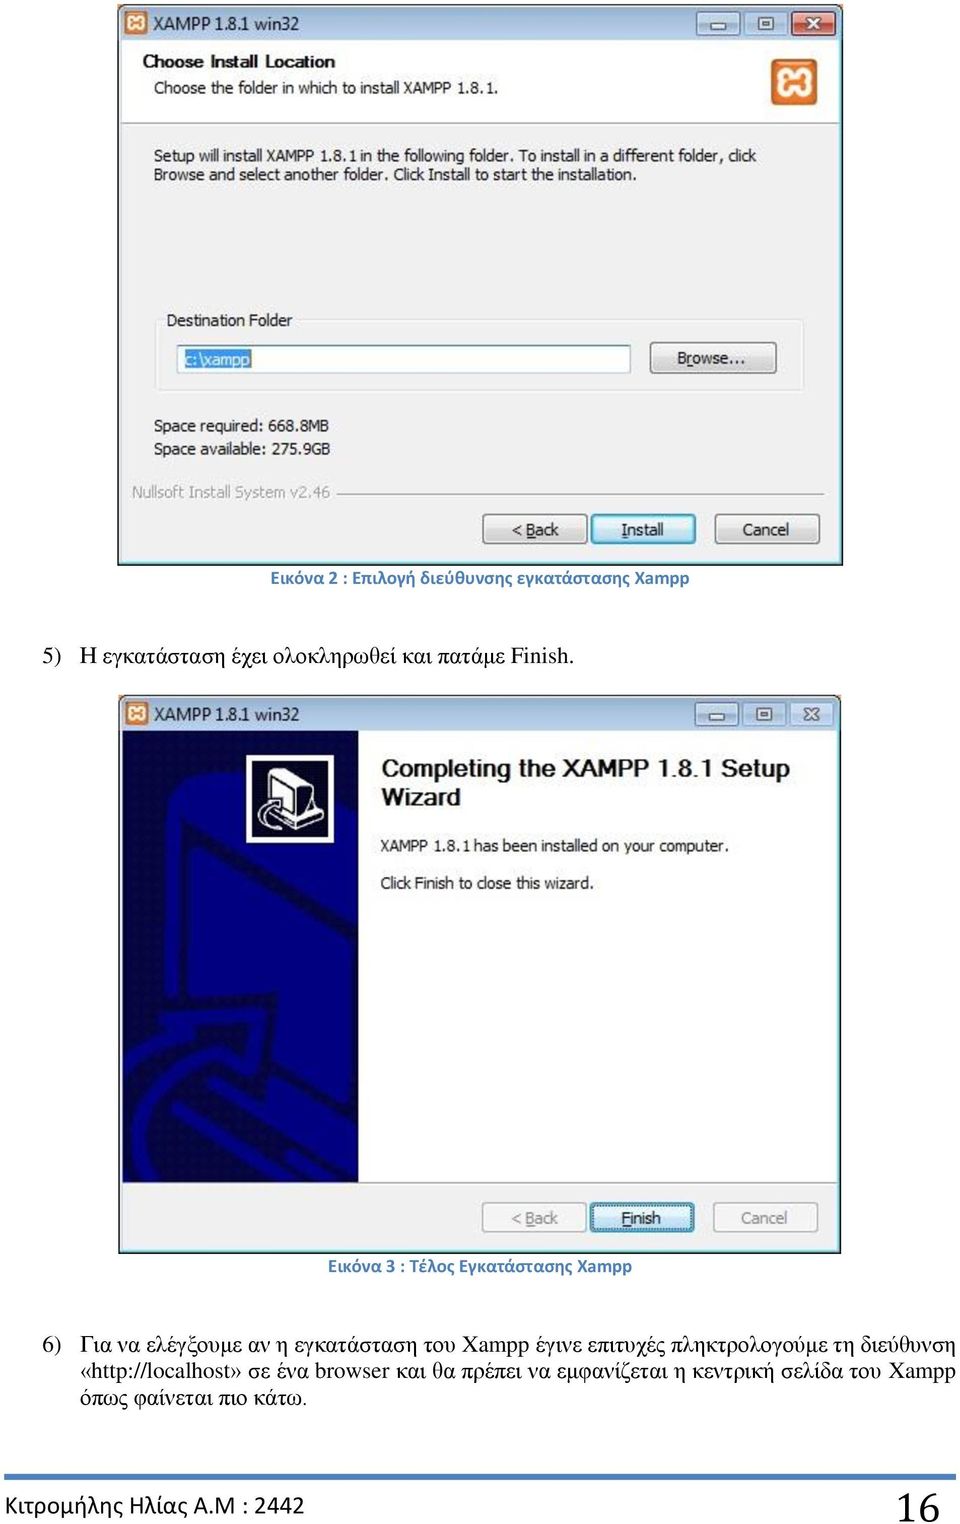 Εικόνα 3 : Τέλος Εγκατάστασης Xampp 6) Για να ελέγξουμε αν η εγκατάσταση του Xampp έγινε